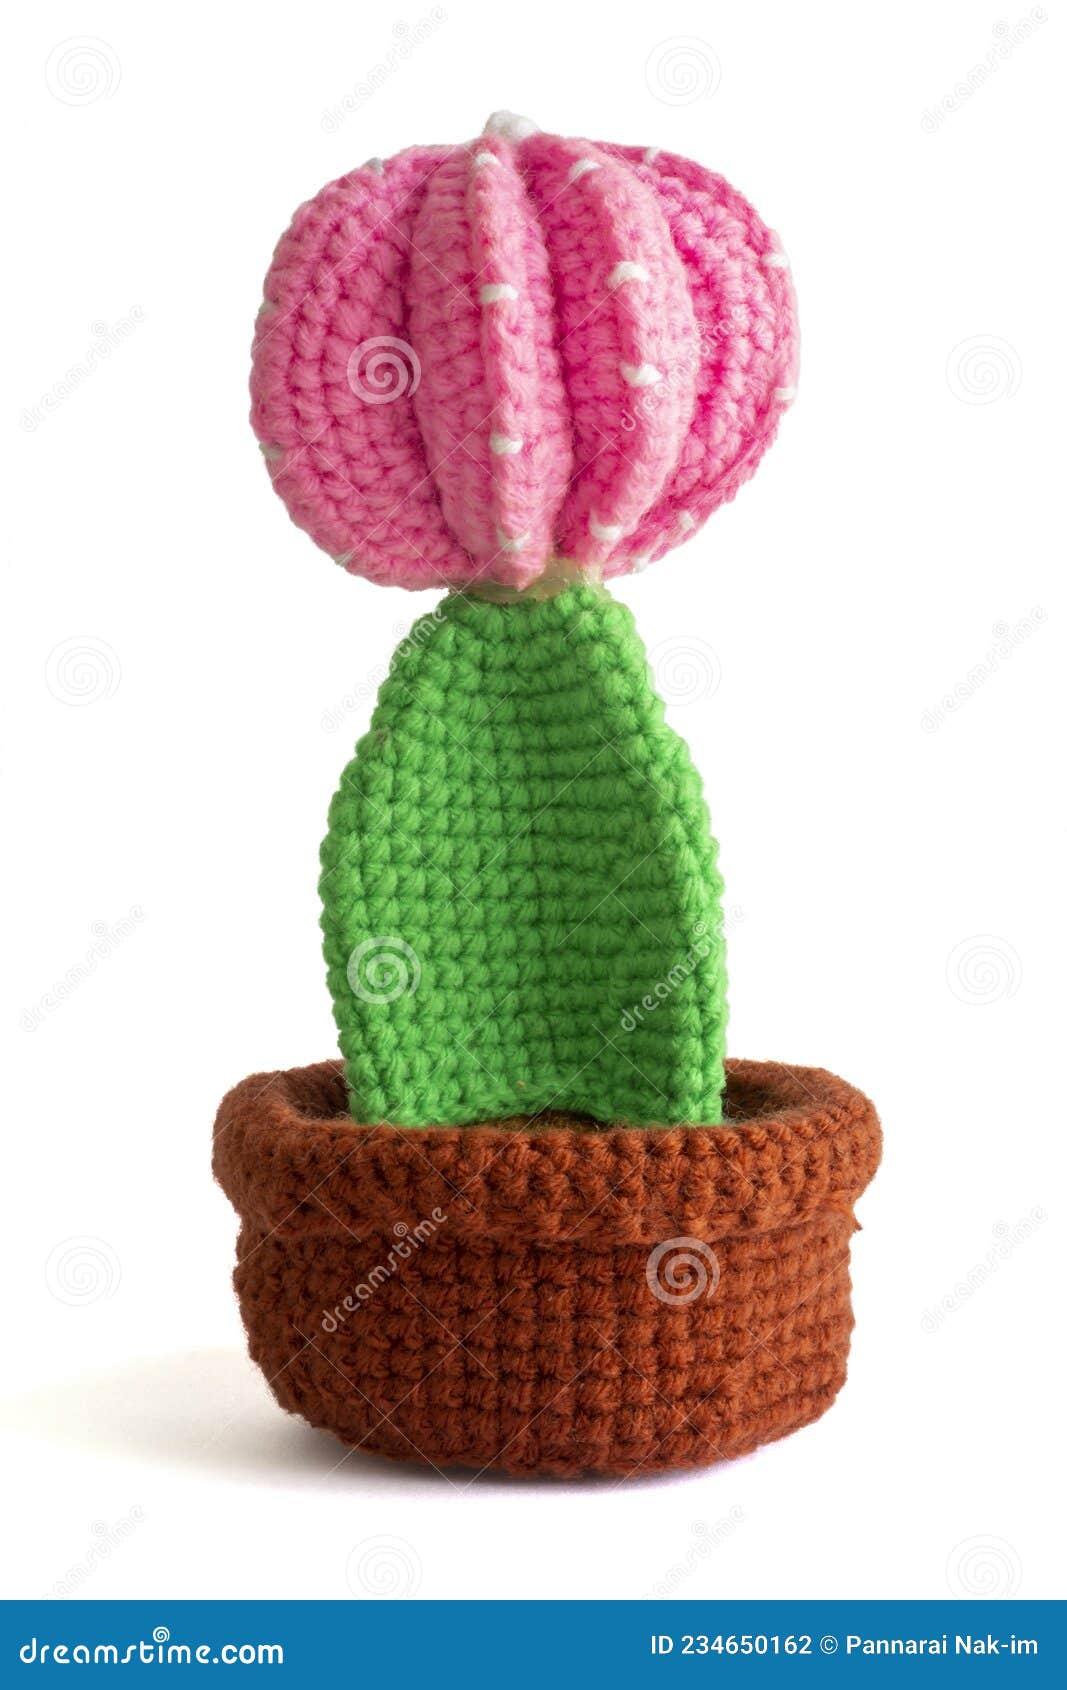 La Flor De Cactus En Olla De Hilados De Crochet Es Artesanía Para La  Decoración Y Regalo Sobre Fondo Blanco. Foto de archivo - Imagen de  colorido, cabrito: 234650162